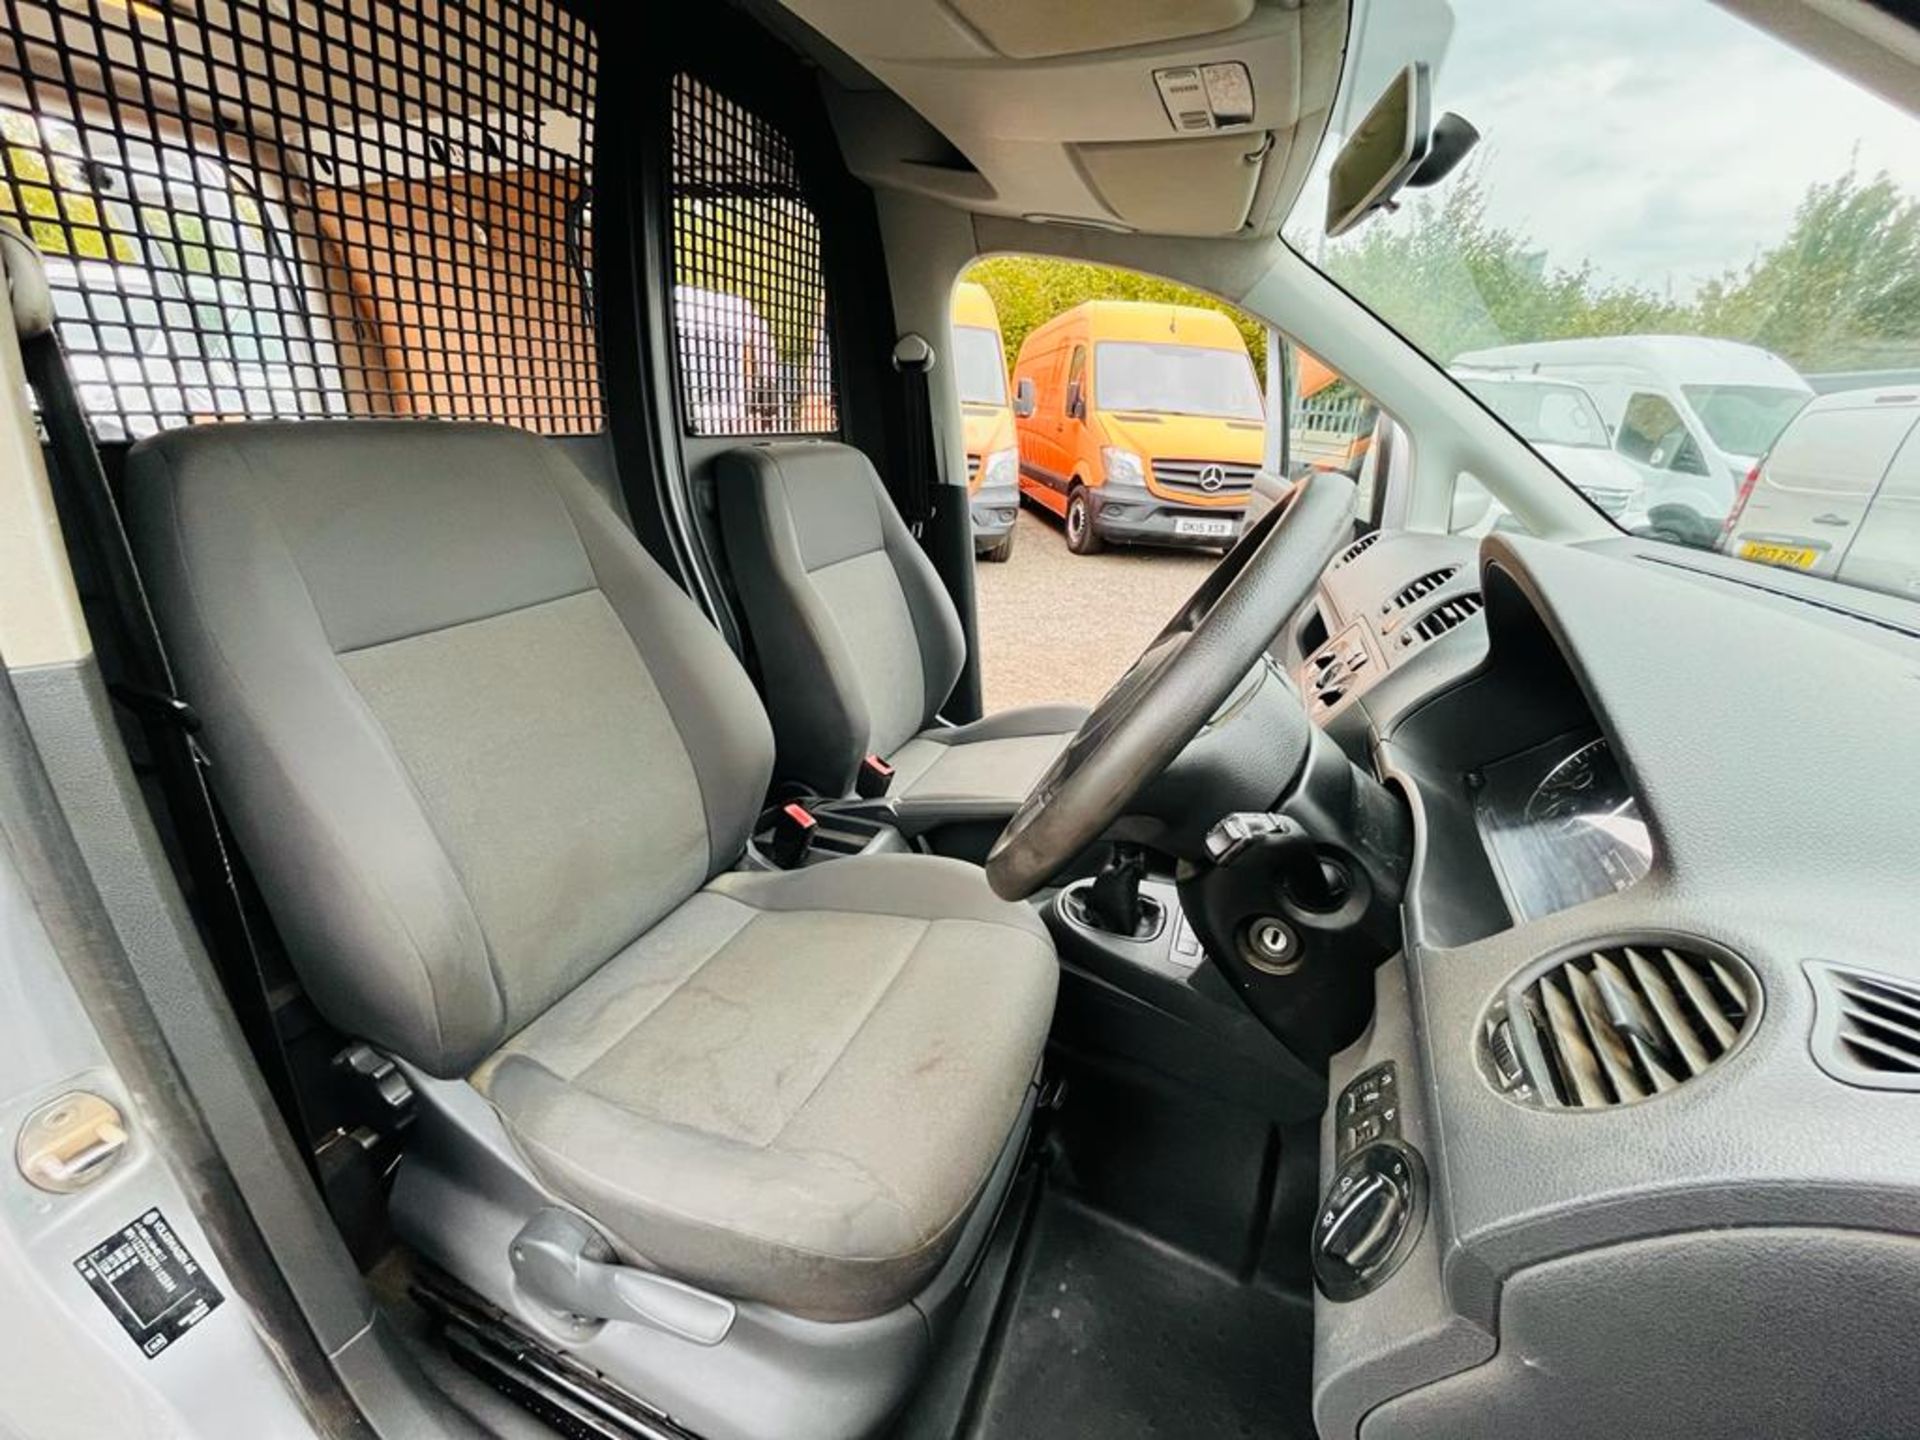 Volkswagon Caddy C20 1.6 TDI 102 Trendline Van 2015 '15 Reg' - Panel Van - Image 17 of 27